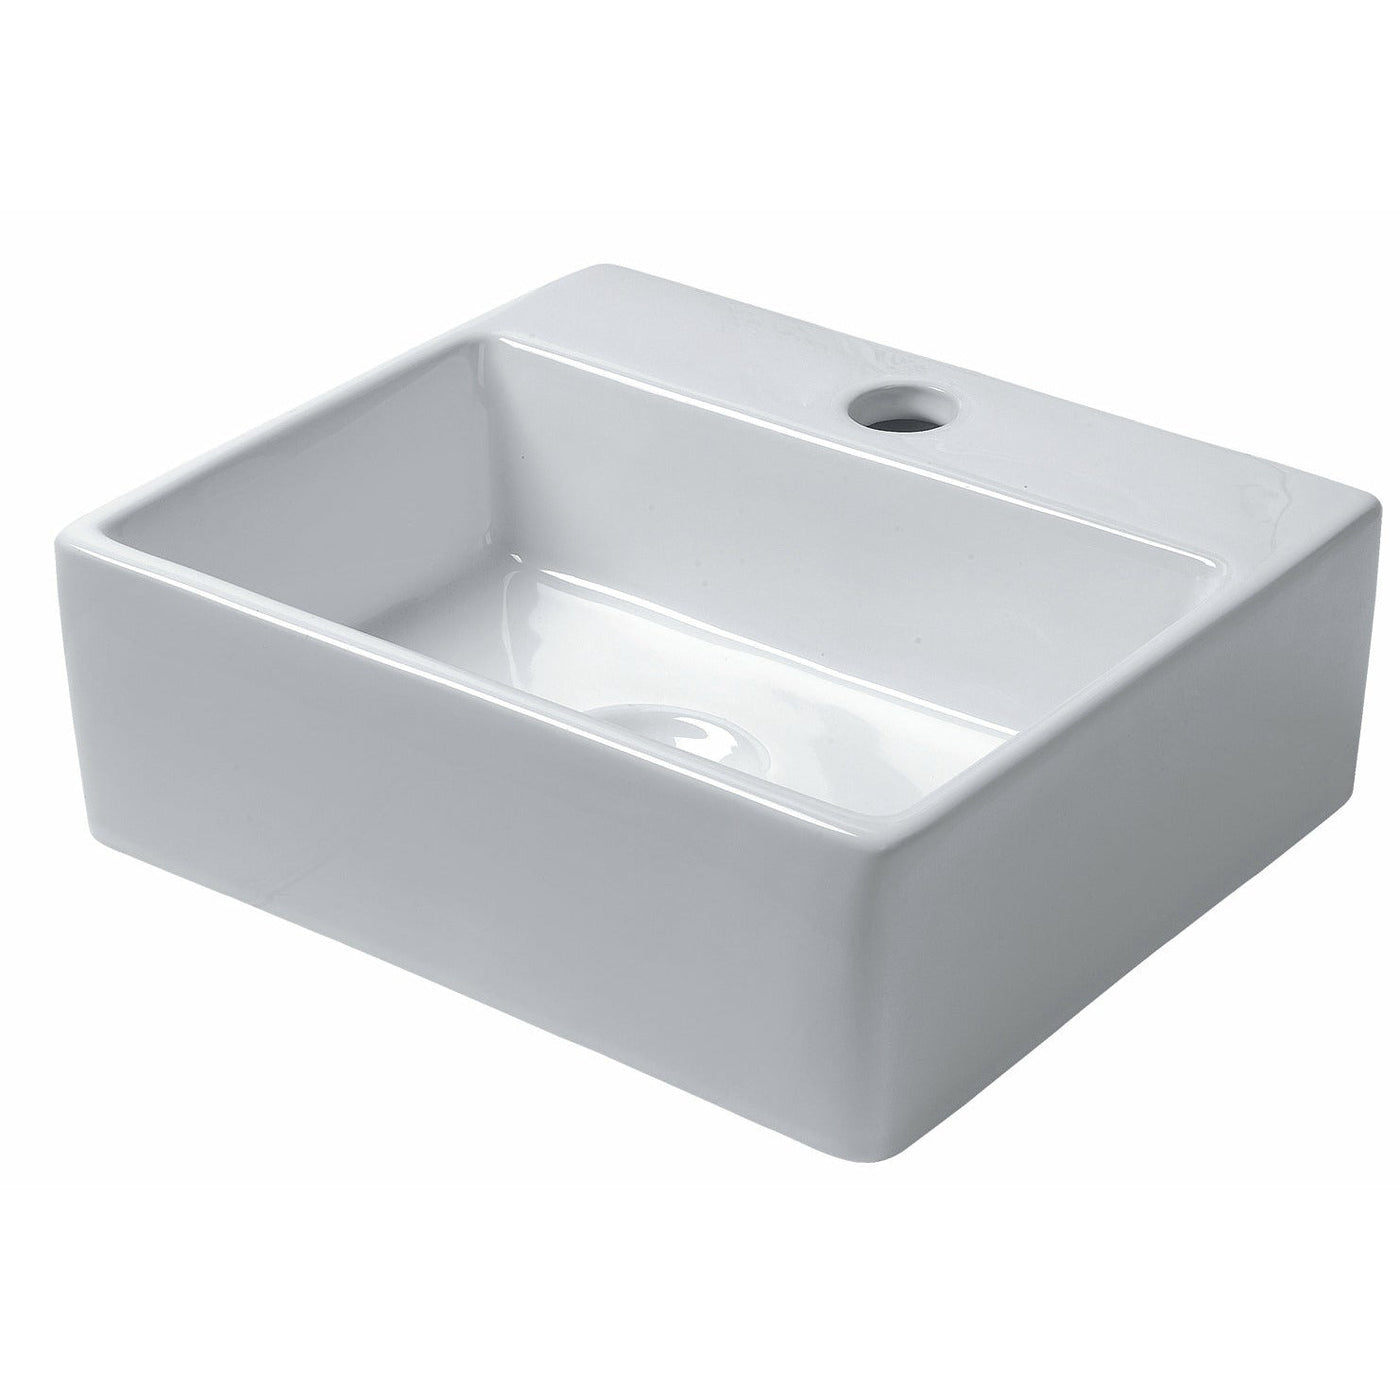 Saneux Gloss White MATTEO Washbasin 34 x 30cm - NO TH - Letta London - 